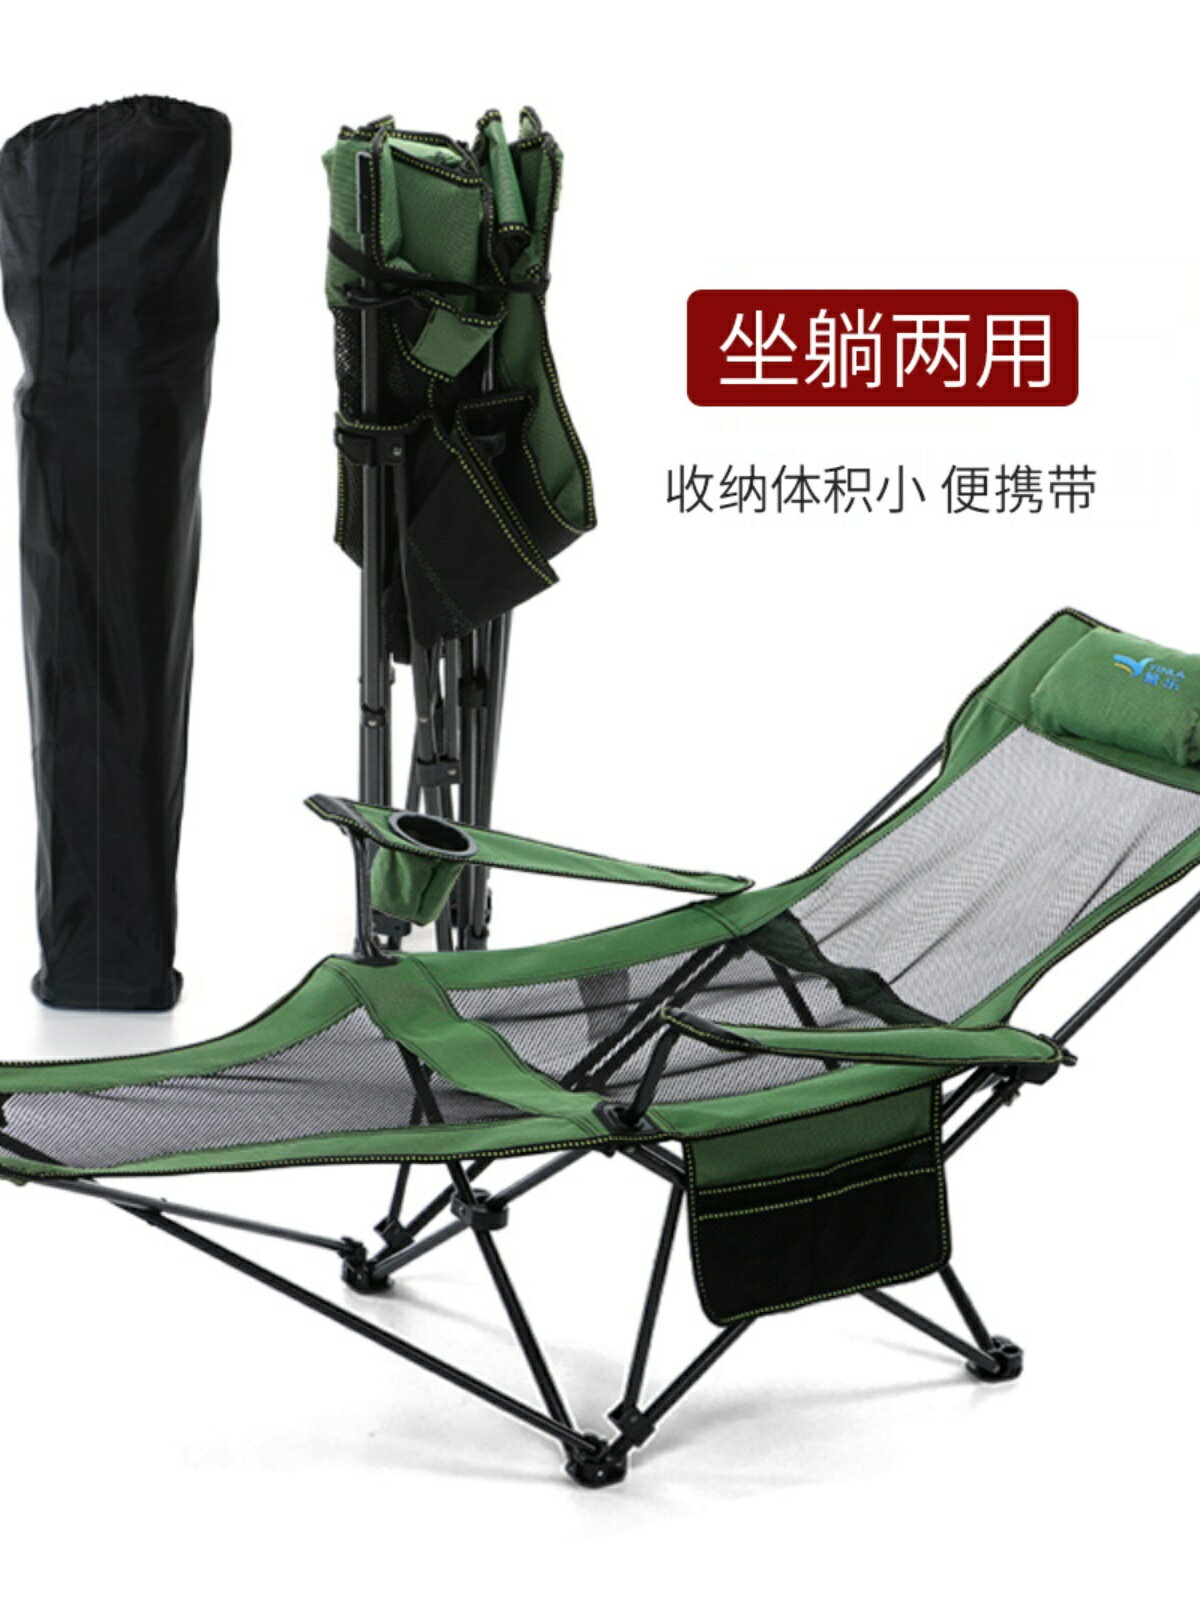 戶外折疊躺椅便攜扶手椅子釣魚椅露營收納椅凳子辦公午睡床沙灘椅